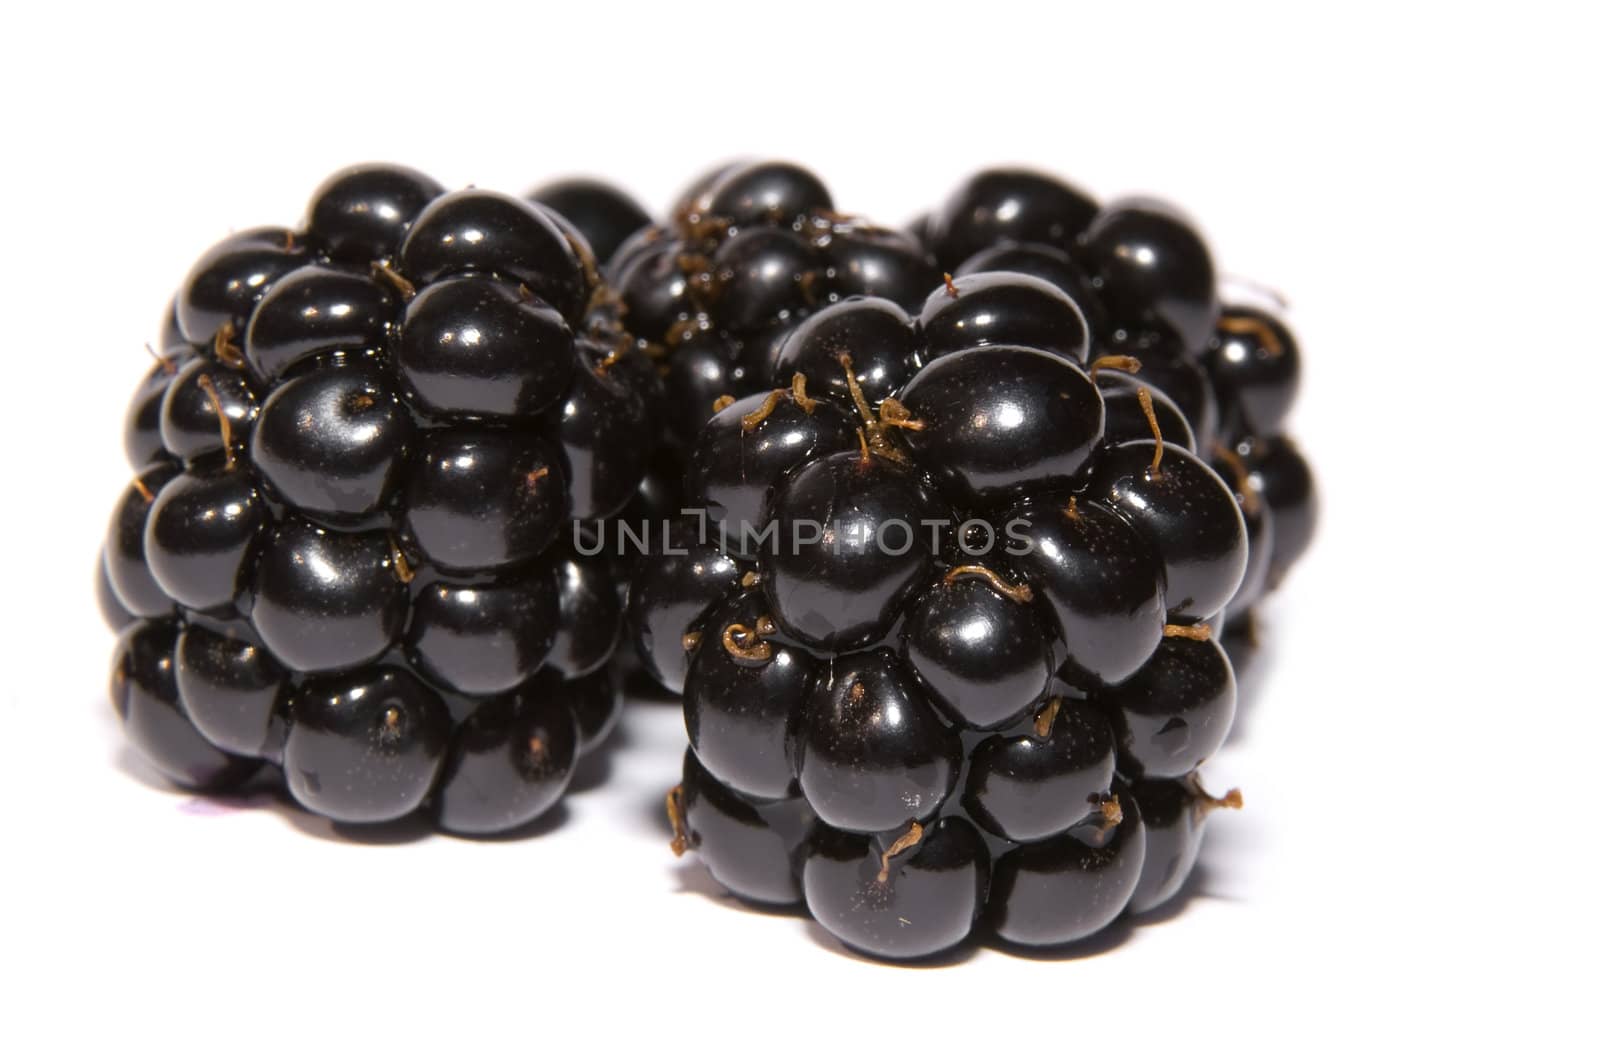 blackberries by karinclaus